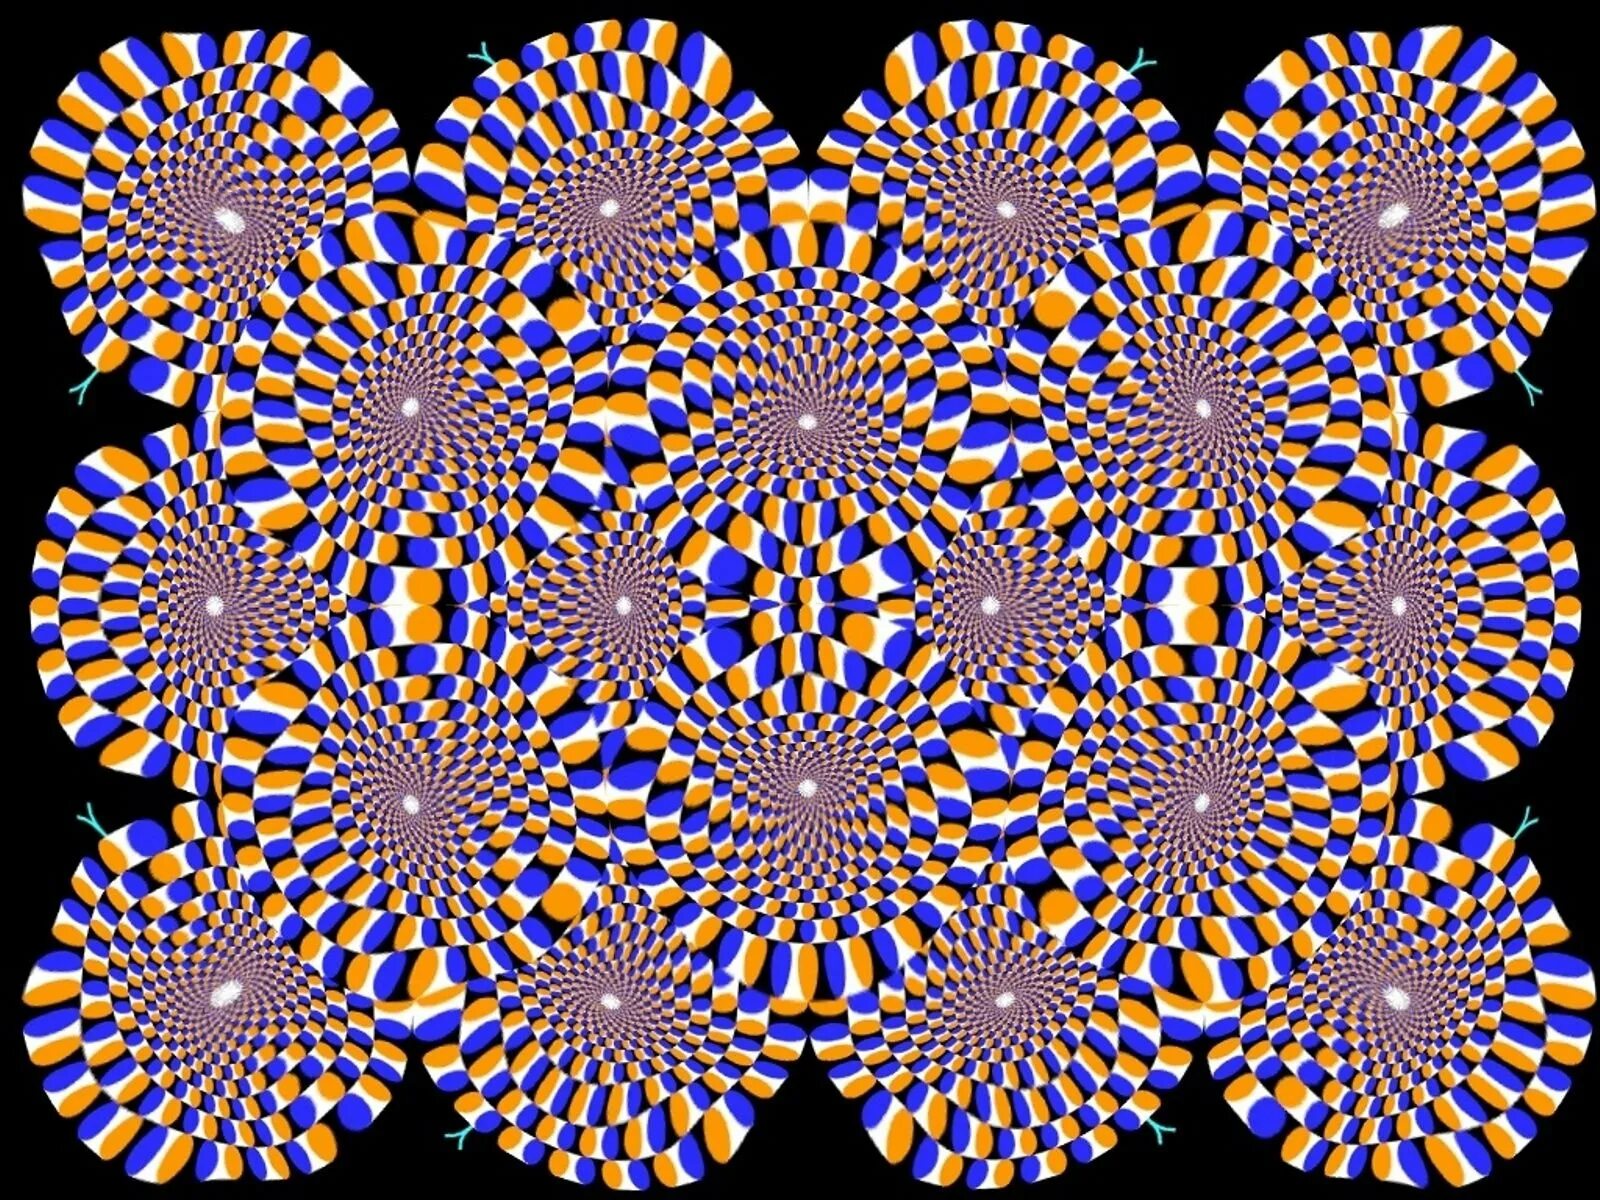 Видео для глаз для улучшения. Акиоши Китаока иллюзия. Иллюзия Акиоши Китаока вращающийся змей. Оптические иллюзии стереокартинки. Оптические иллюзии для глаз стереограммы.